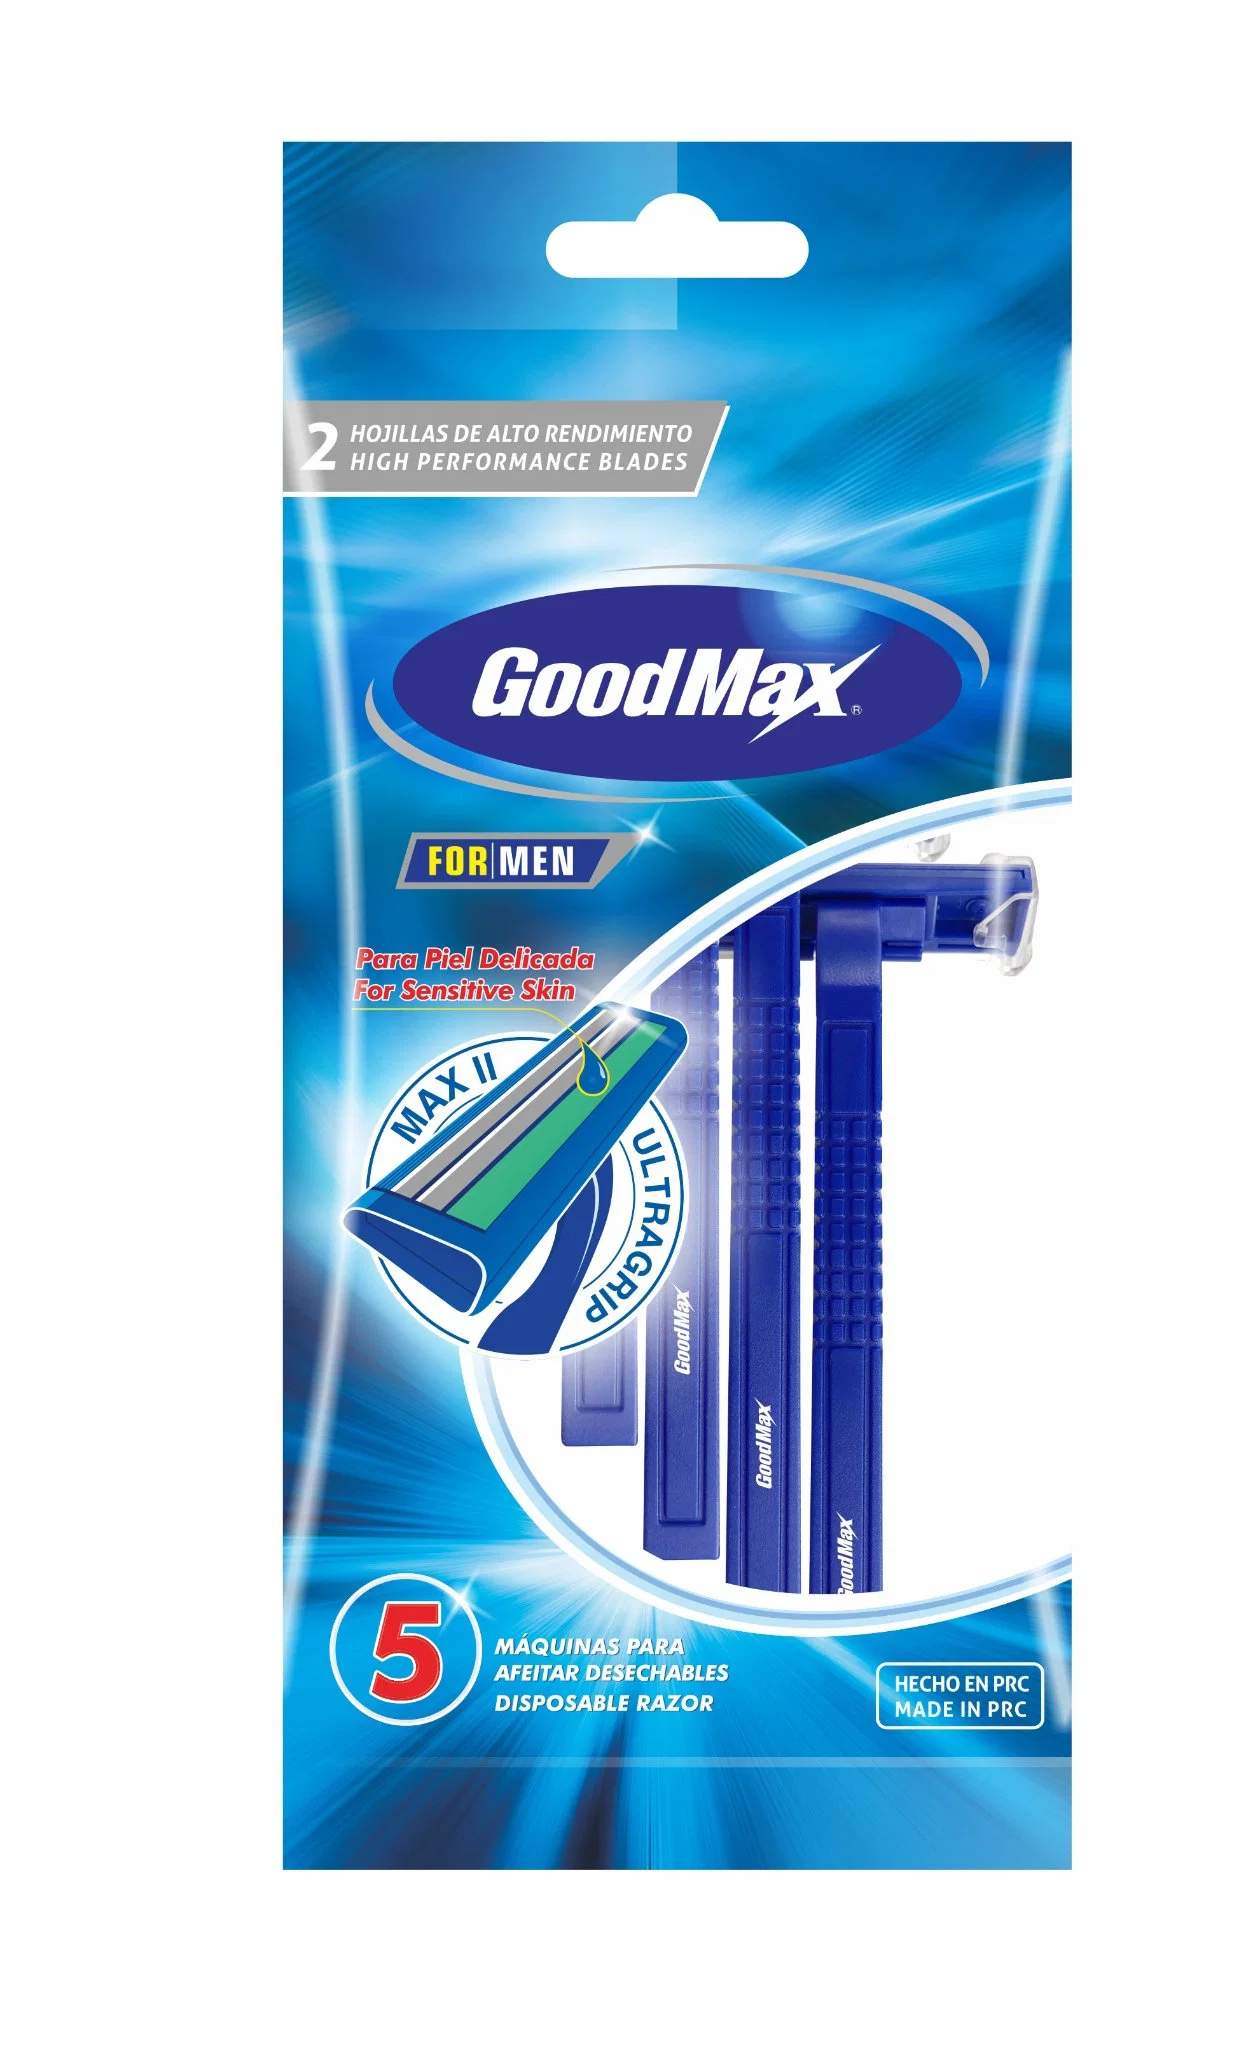 Двойной нож одноразовый бритвенные головки бритвы в мешок (Goodmax)